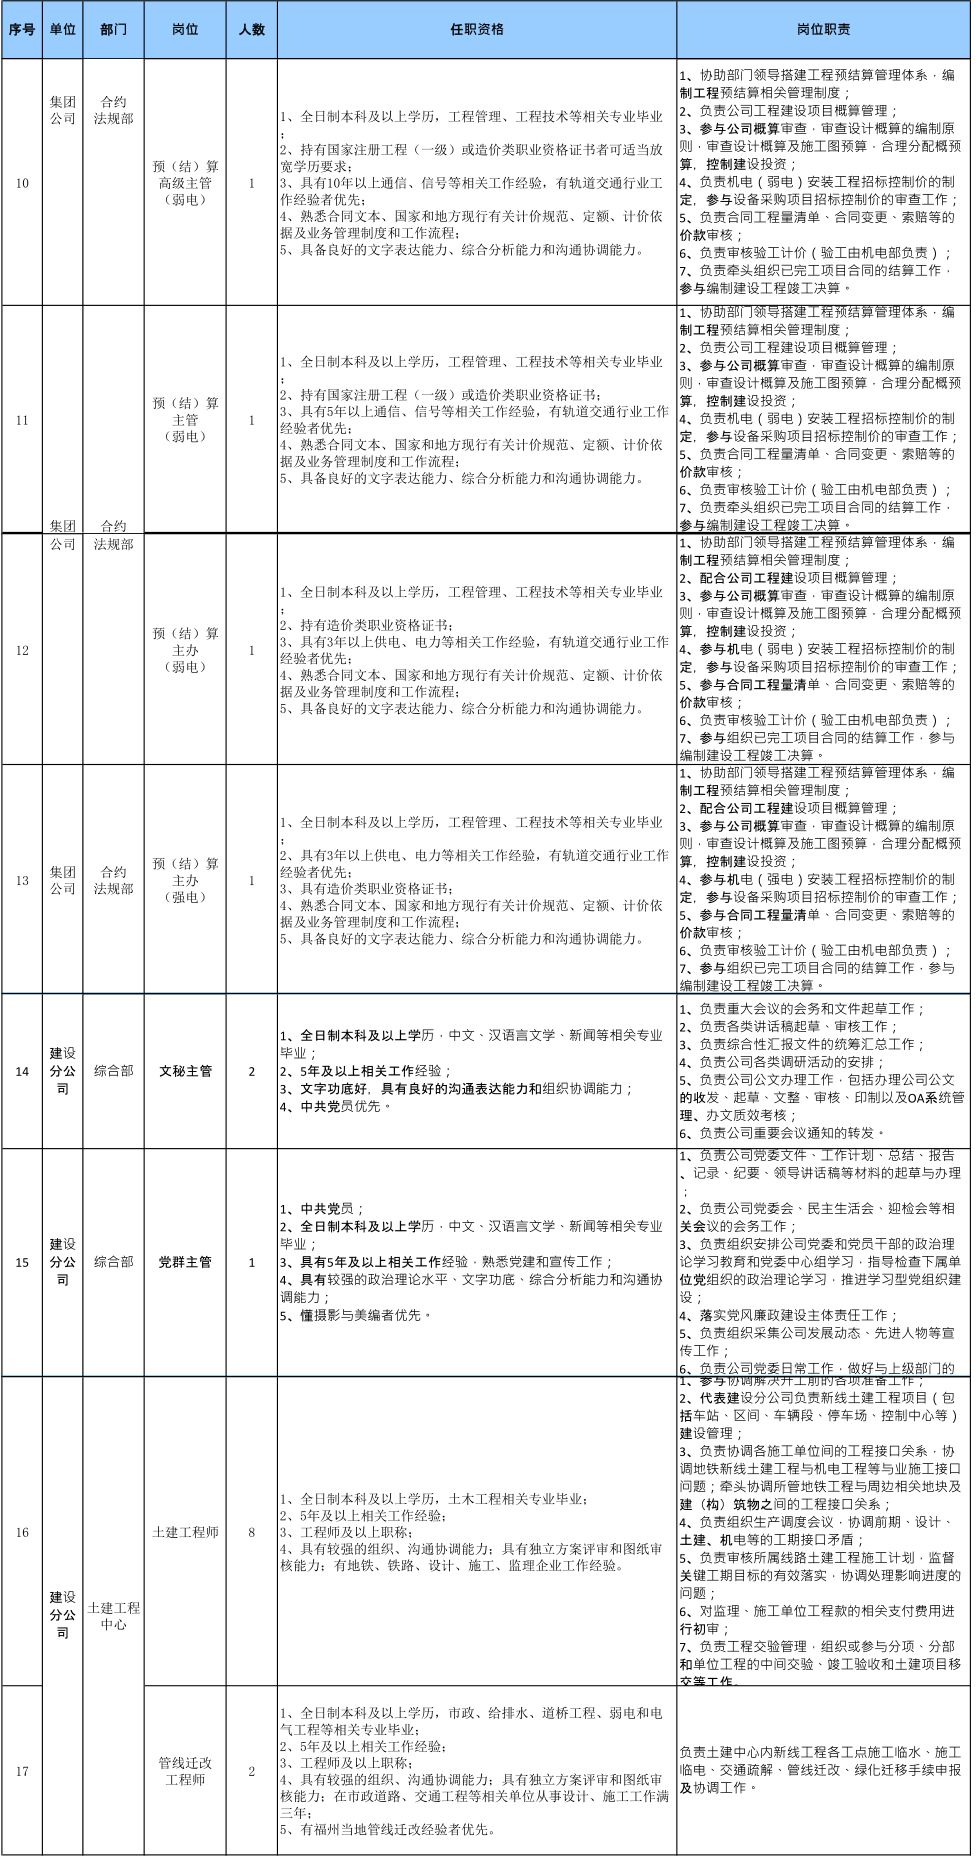 福州地铁集团有限公司2018年招聘公告(一)(